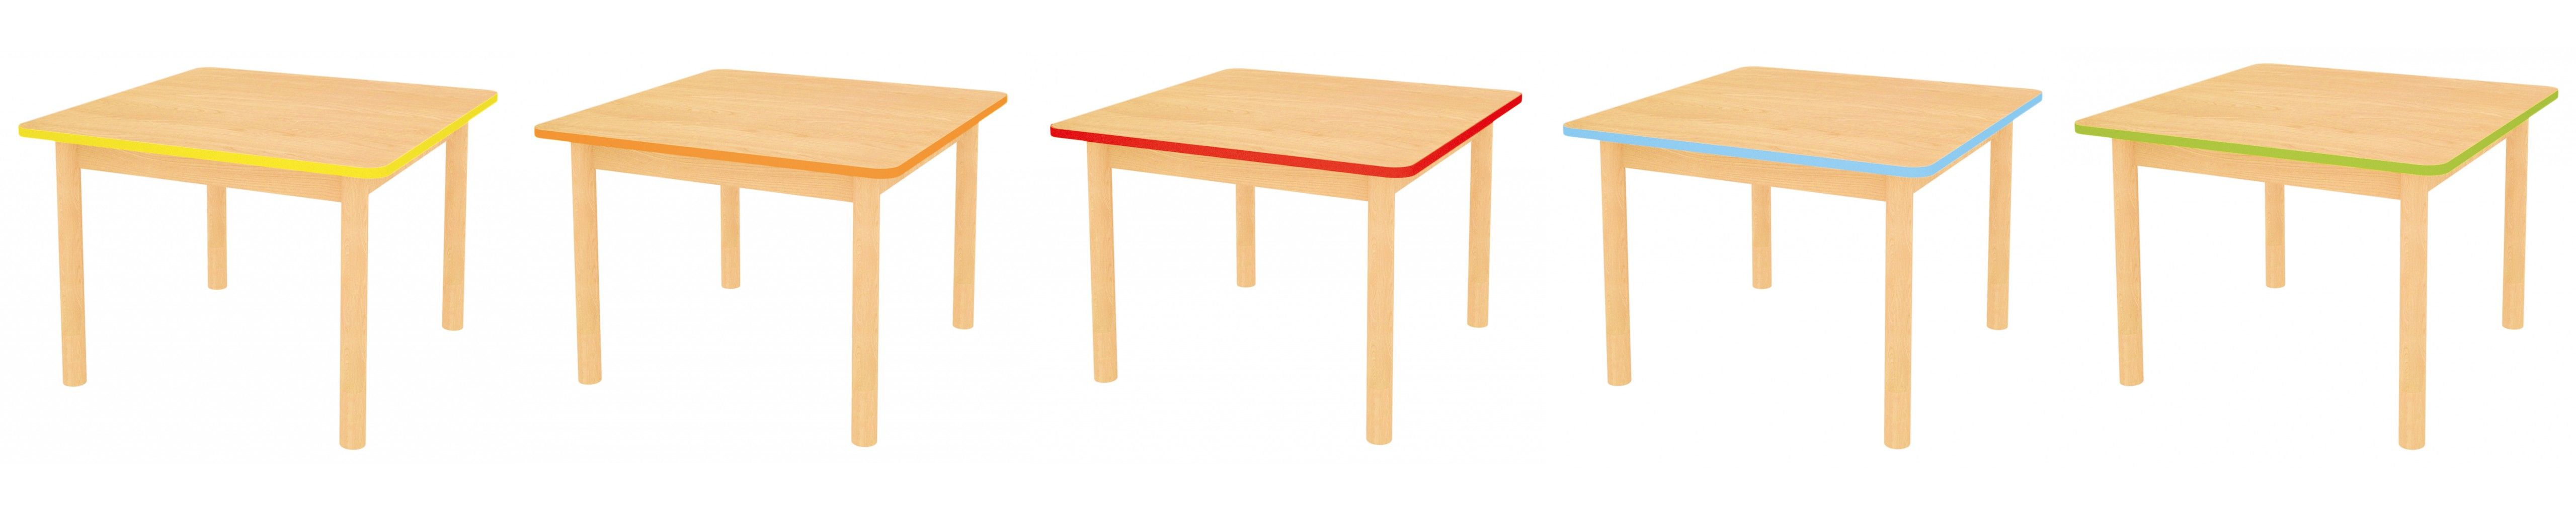 Barevnost-stoly2